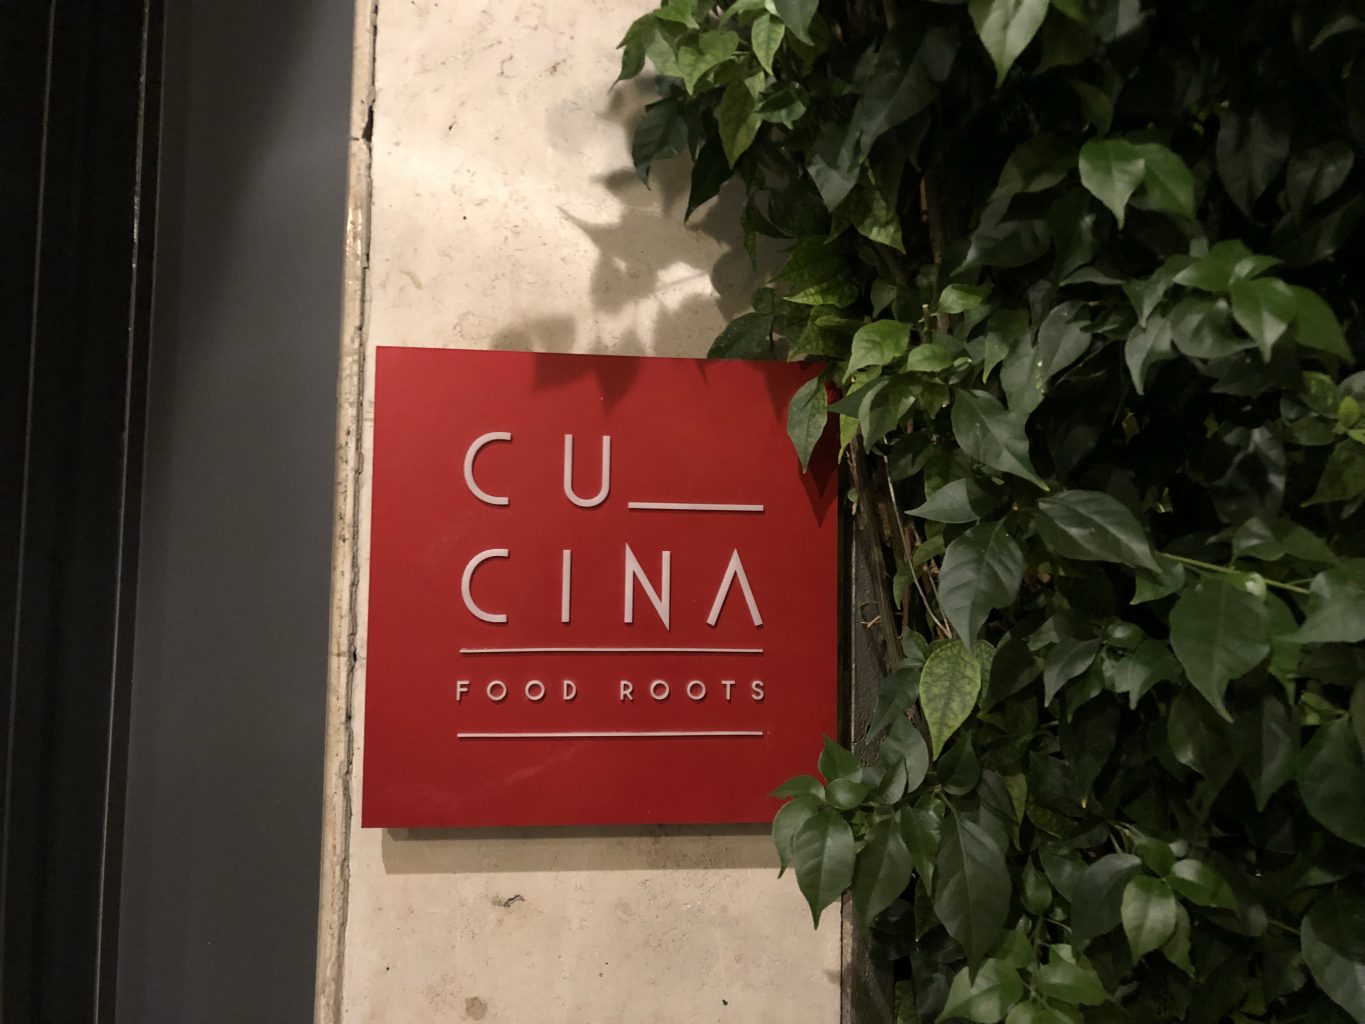 Cu_cina Roma